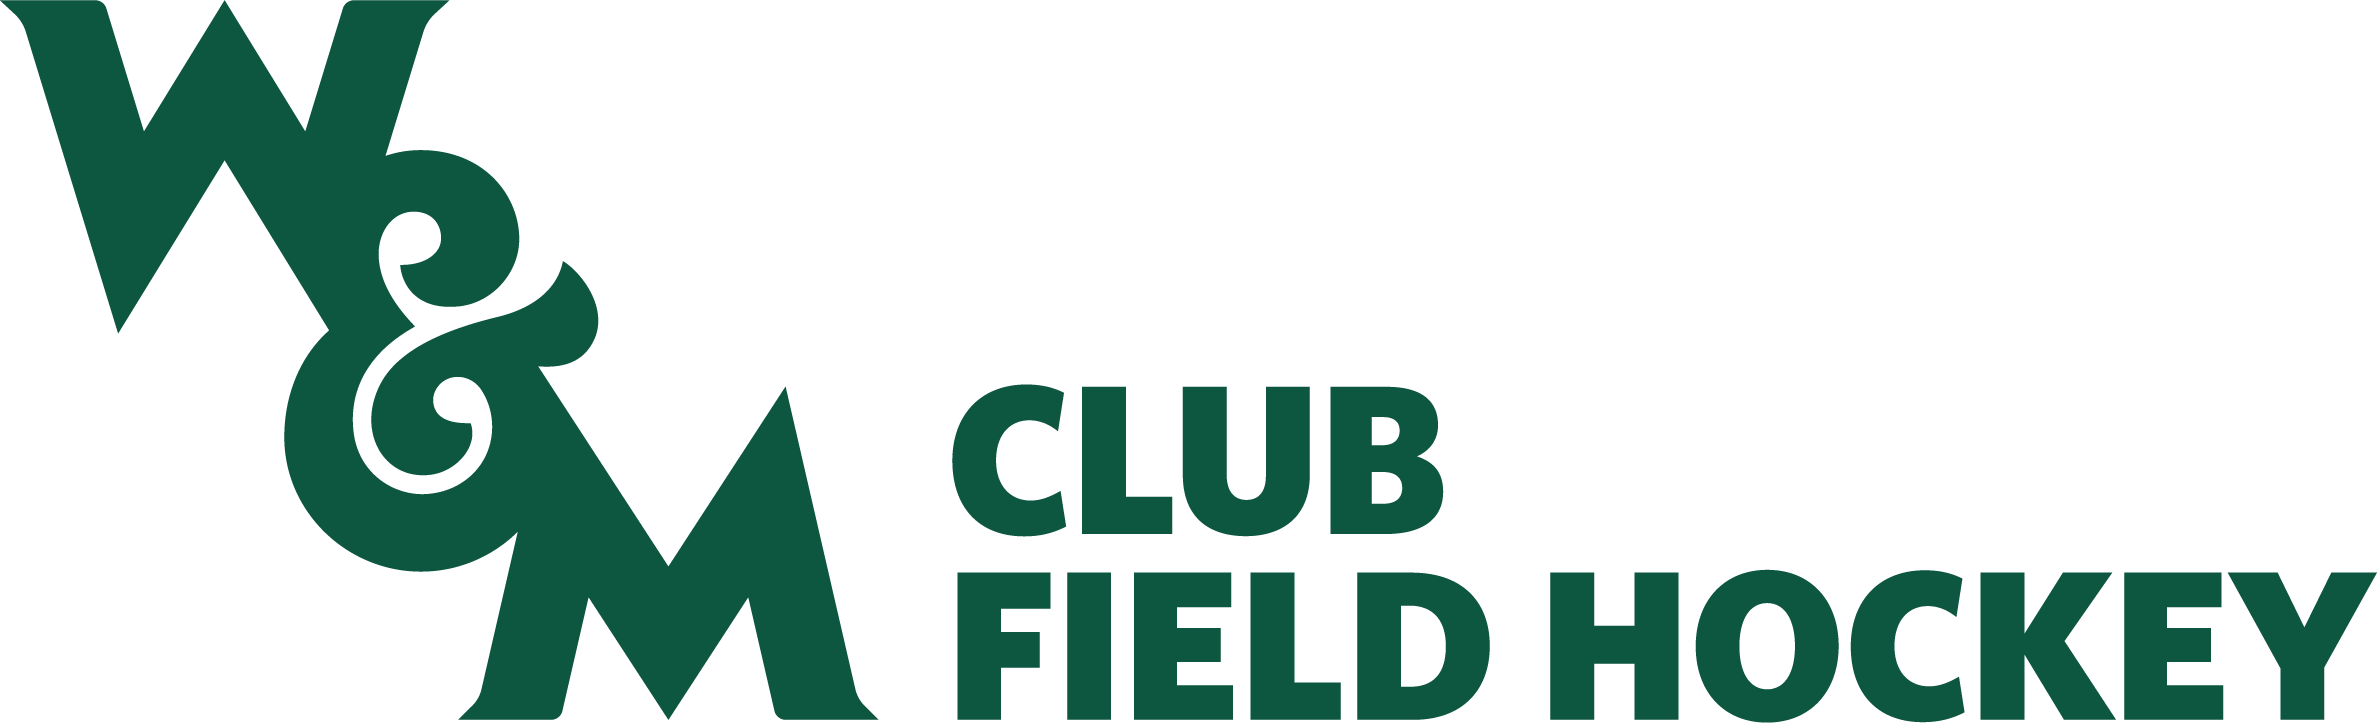 Field Hockey Club Logo